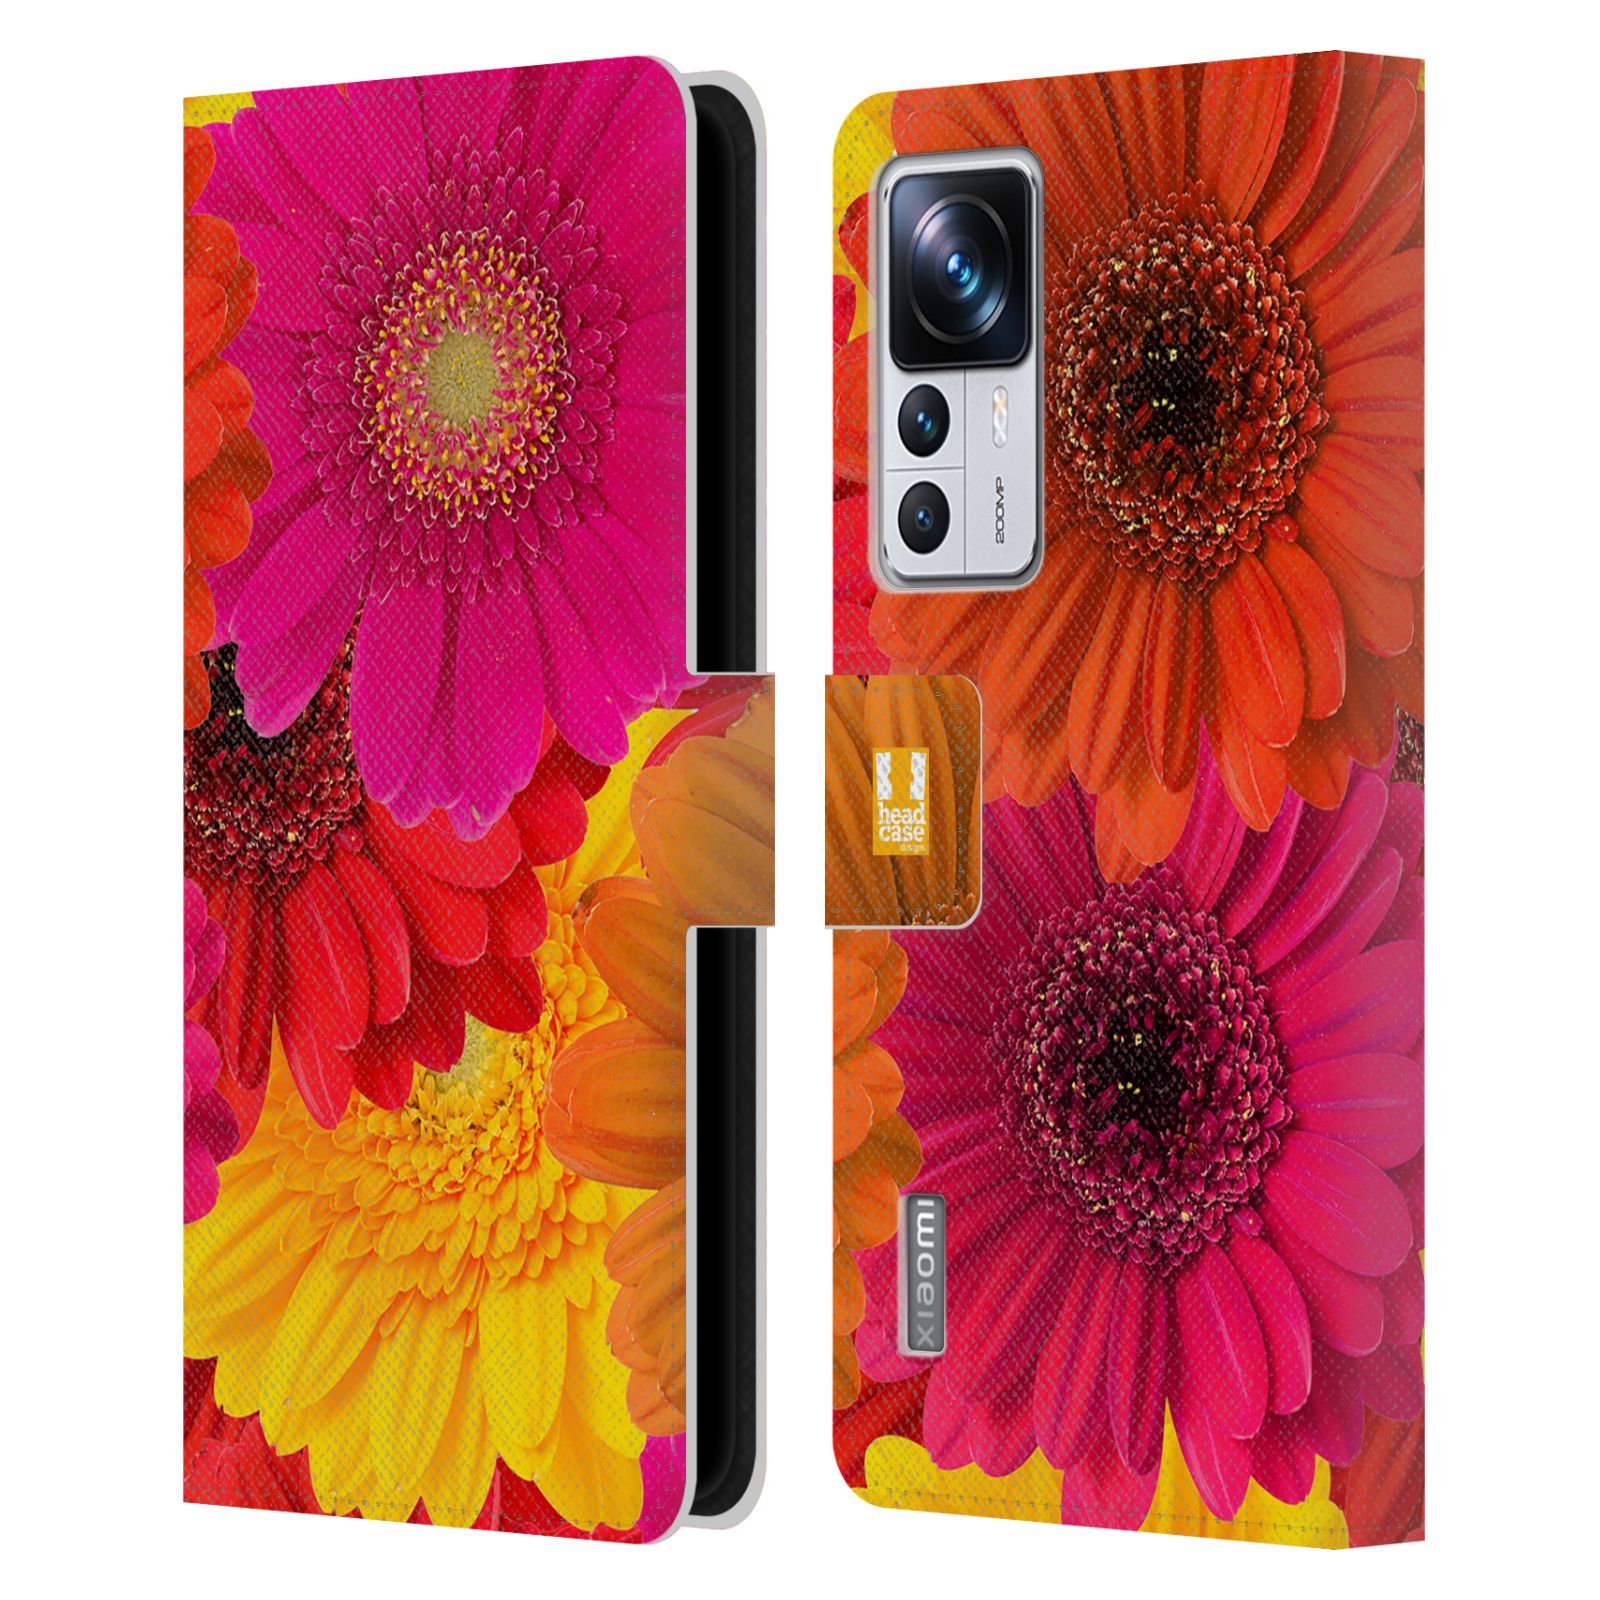 Pouzdro HEAD CASE na mobil Xiaomi 12T PRO květy foto fialová, oranžová GERBERA